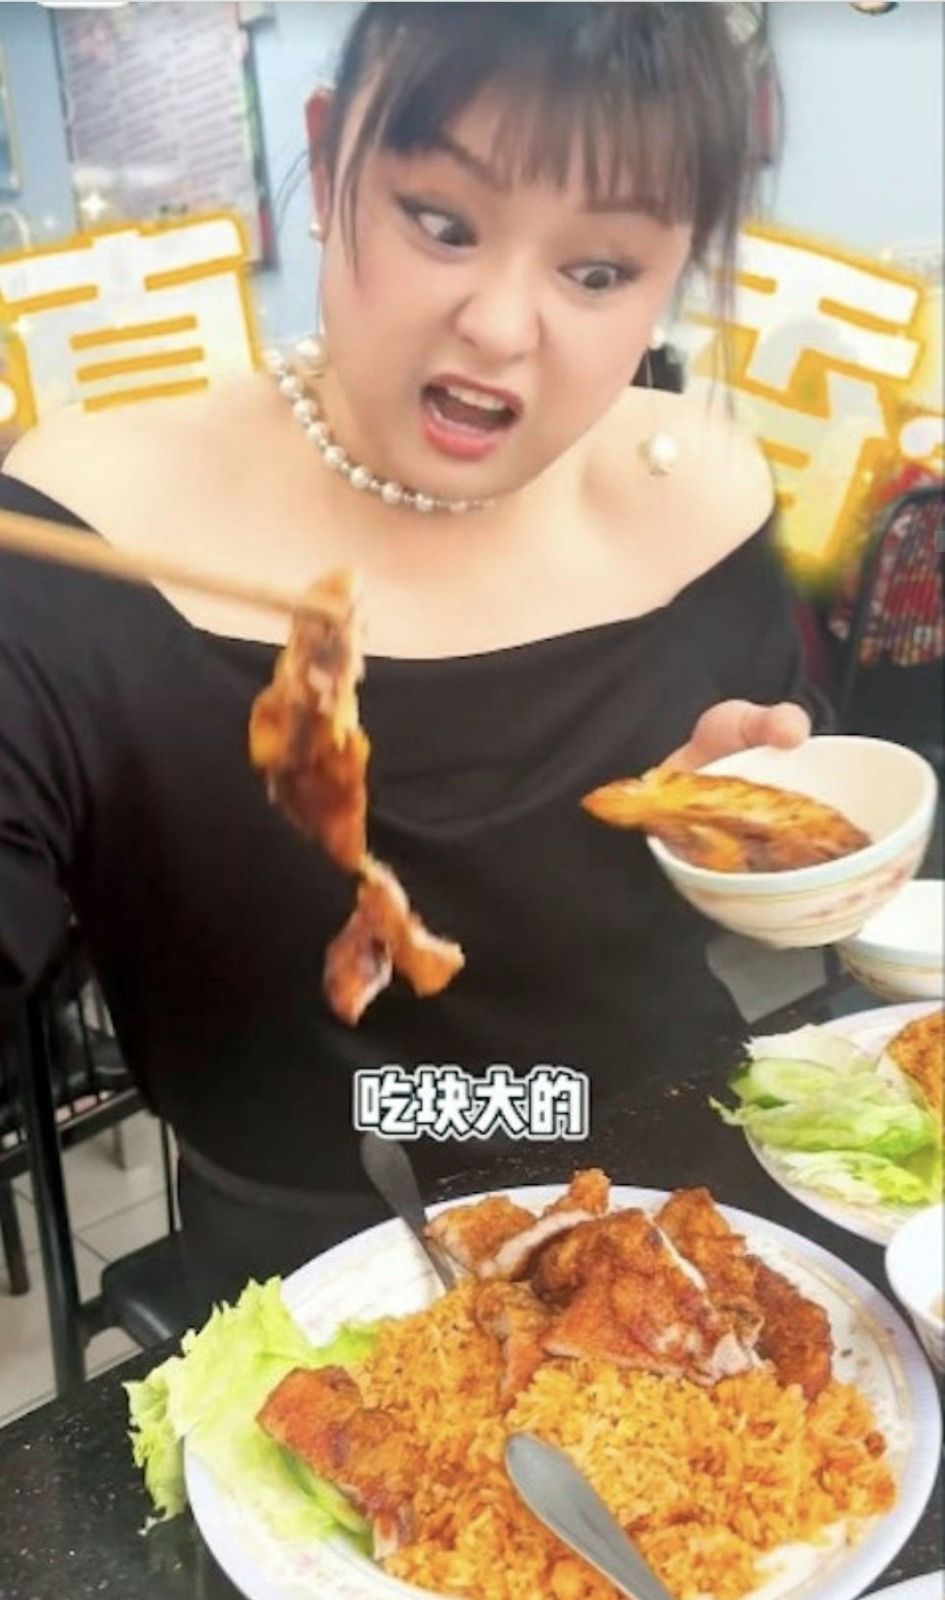 见到越南鸡扒拼猪扒饭就胃口大开。